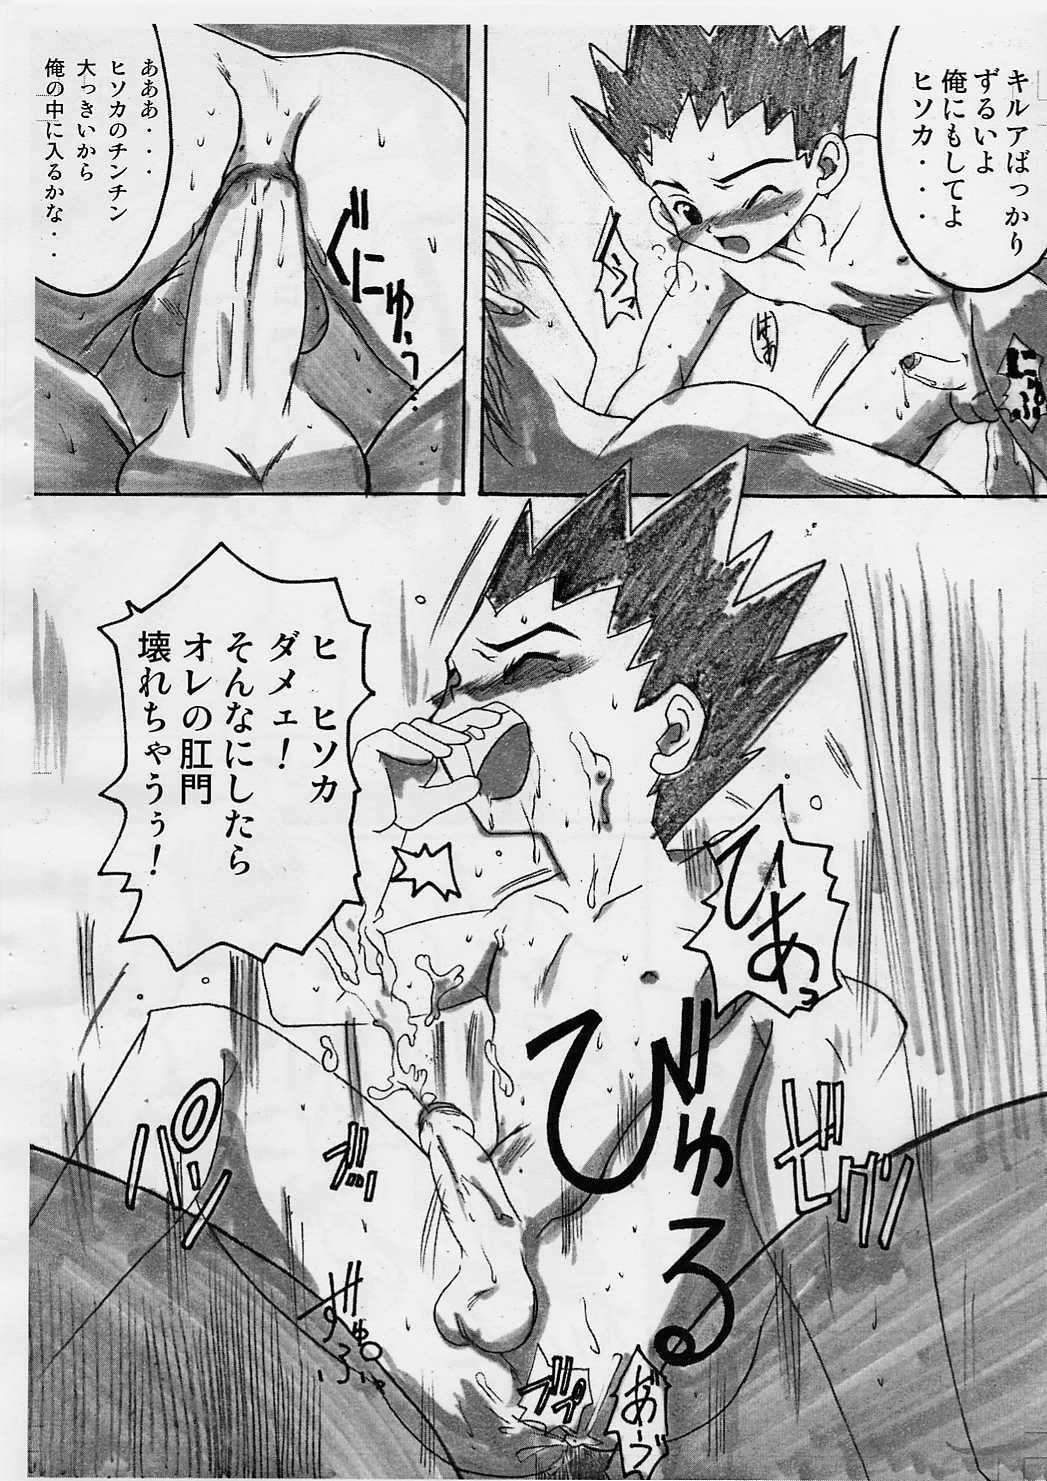 Moms Shotakatsu VOL 1 - Naruto Hunter x hunter Bakusou kyoudai lets and go Rurouni kenshin | samurai x Oil - Page 13